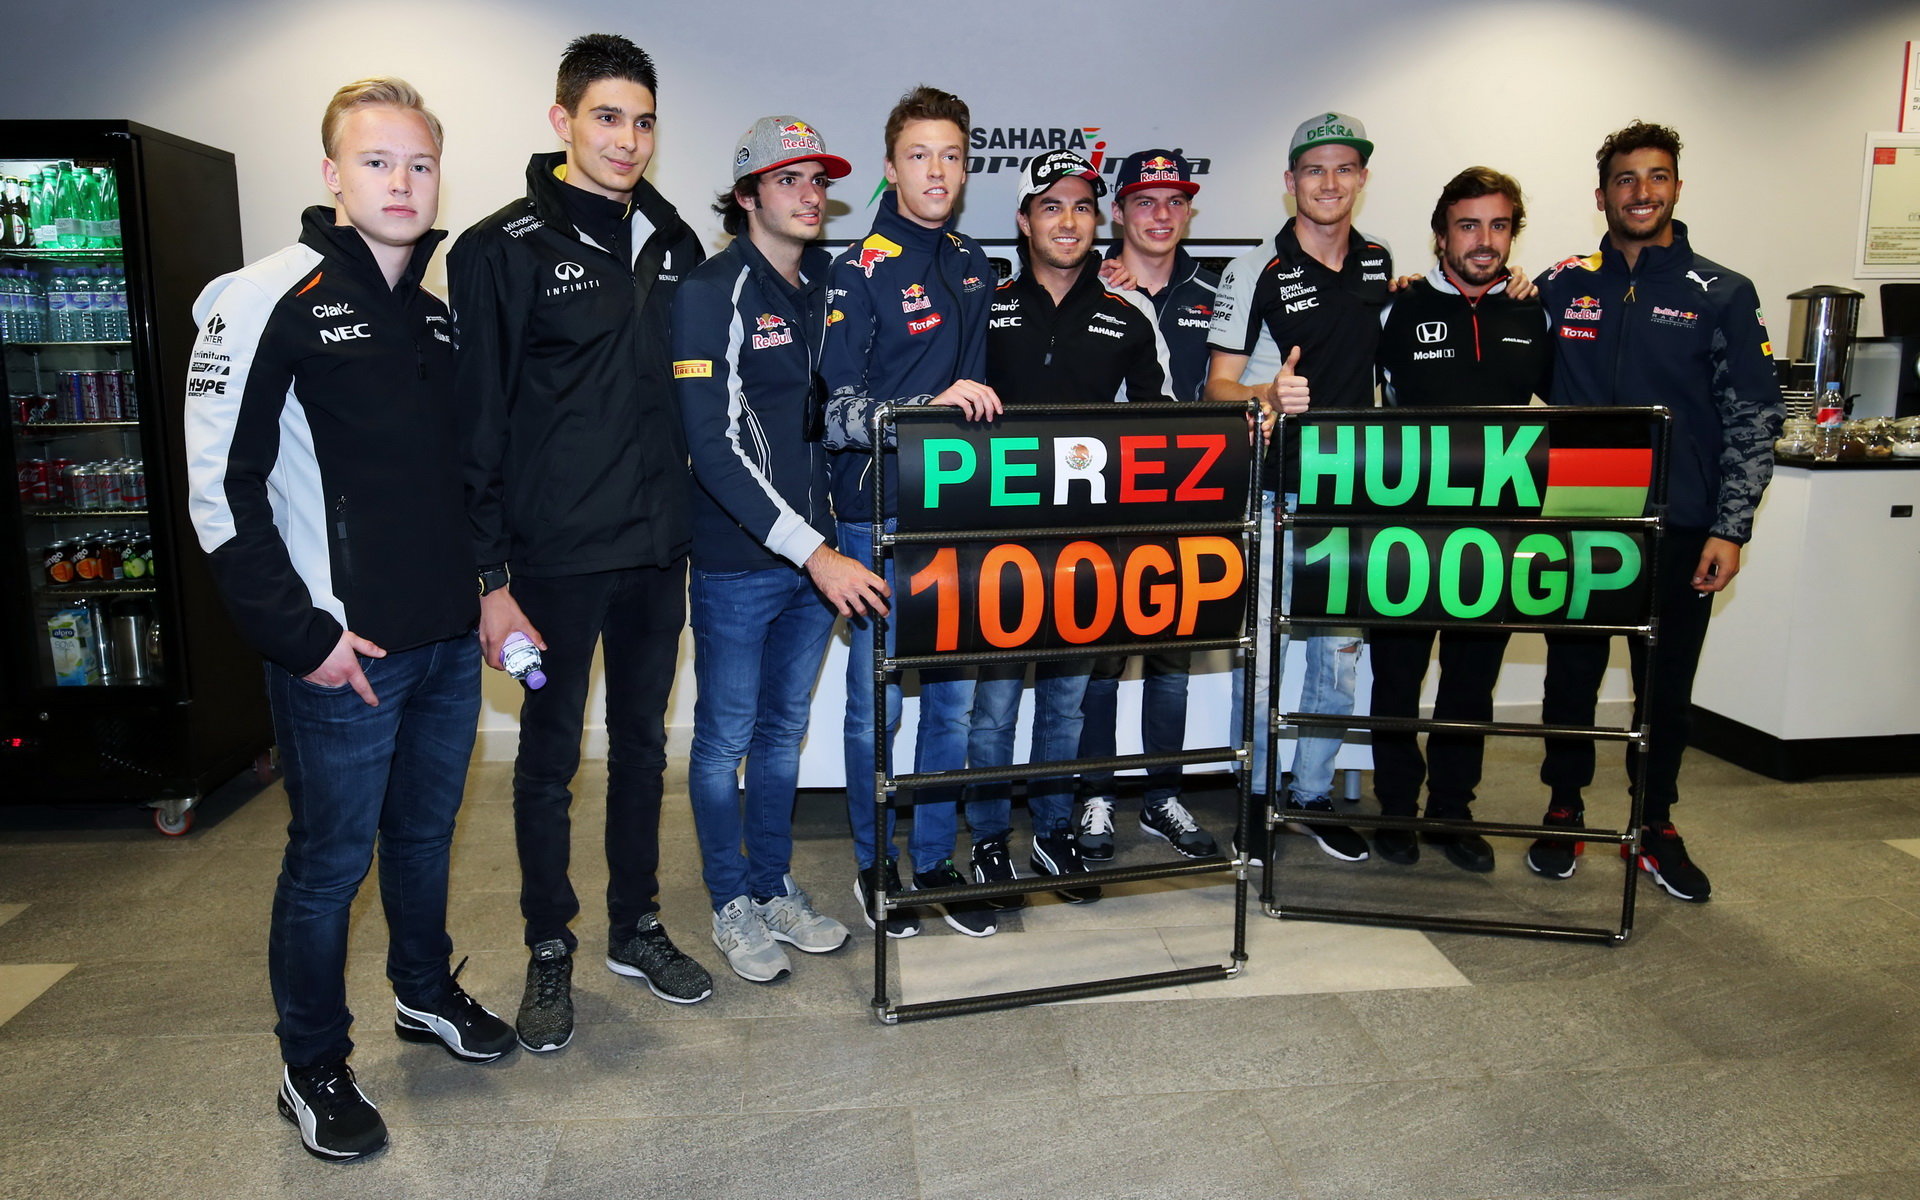 Sergio Pérez a Nico Hülkenberg slaví 100 GP se svými kamarády v Soči. Ovšem ke sté Grand Prix oběma pilotům ještě něco chybí